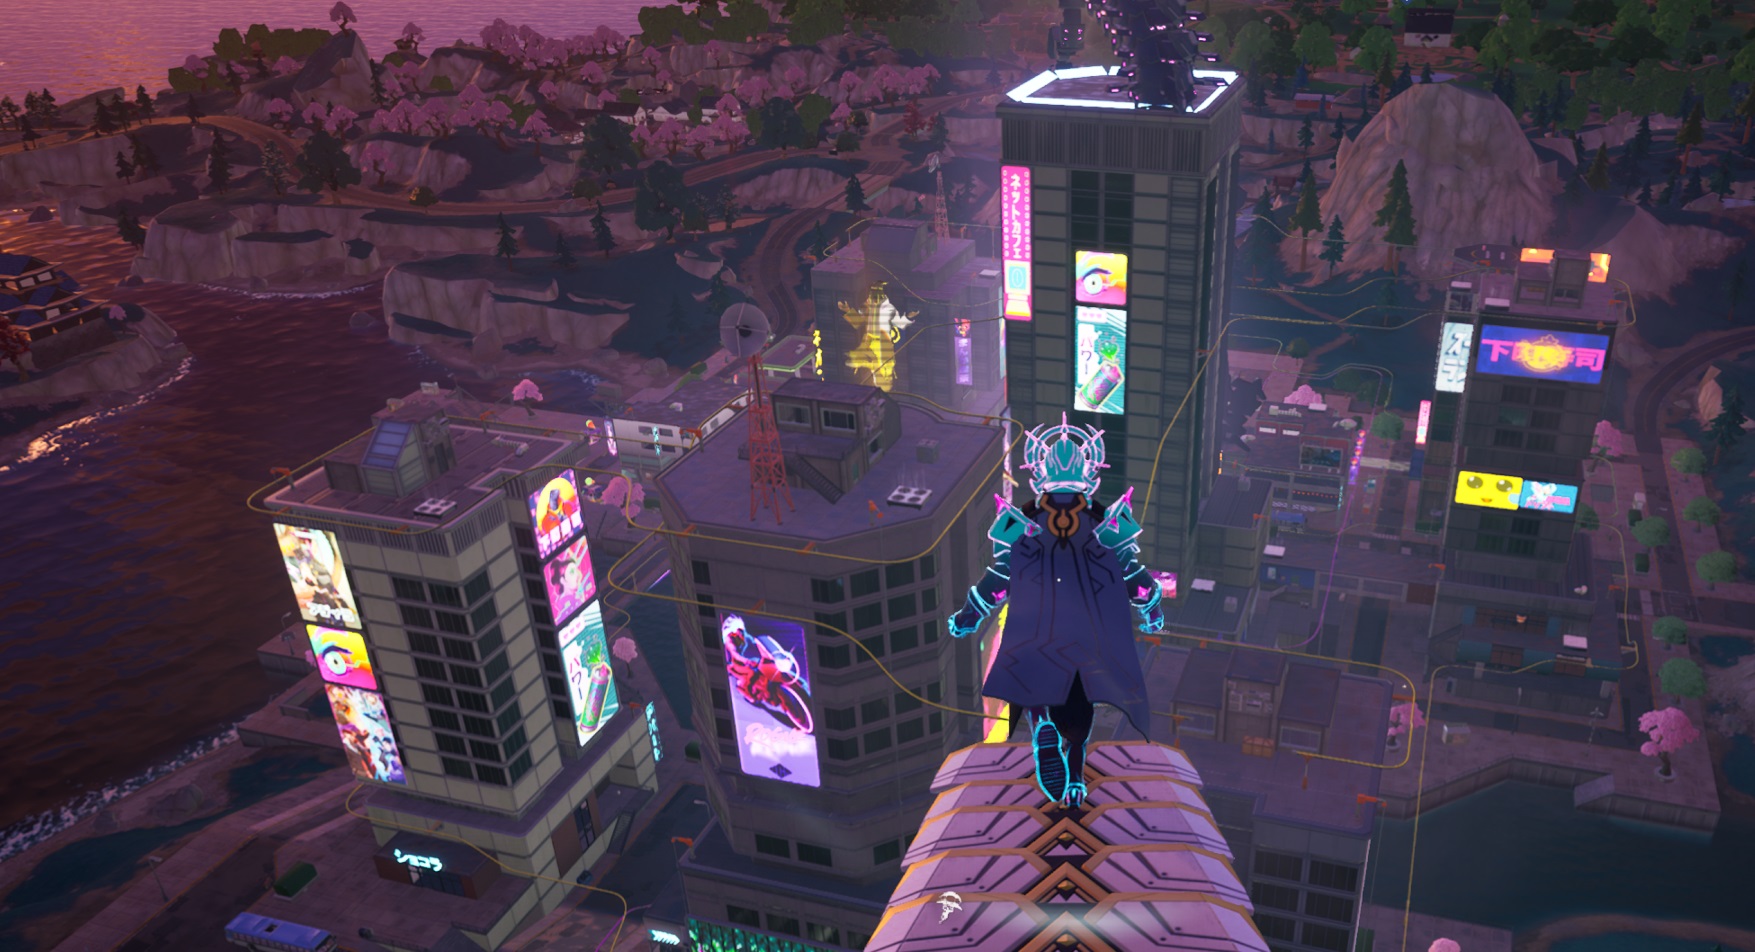 Personagem Fortnite em pé sobre a paisagem urbana.